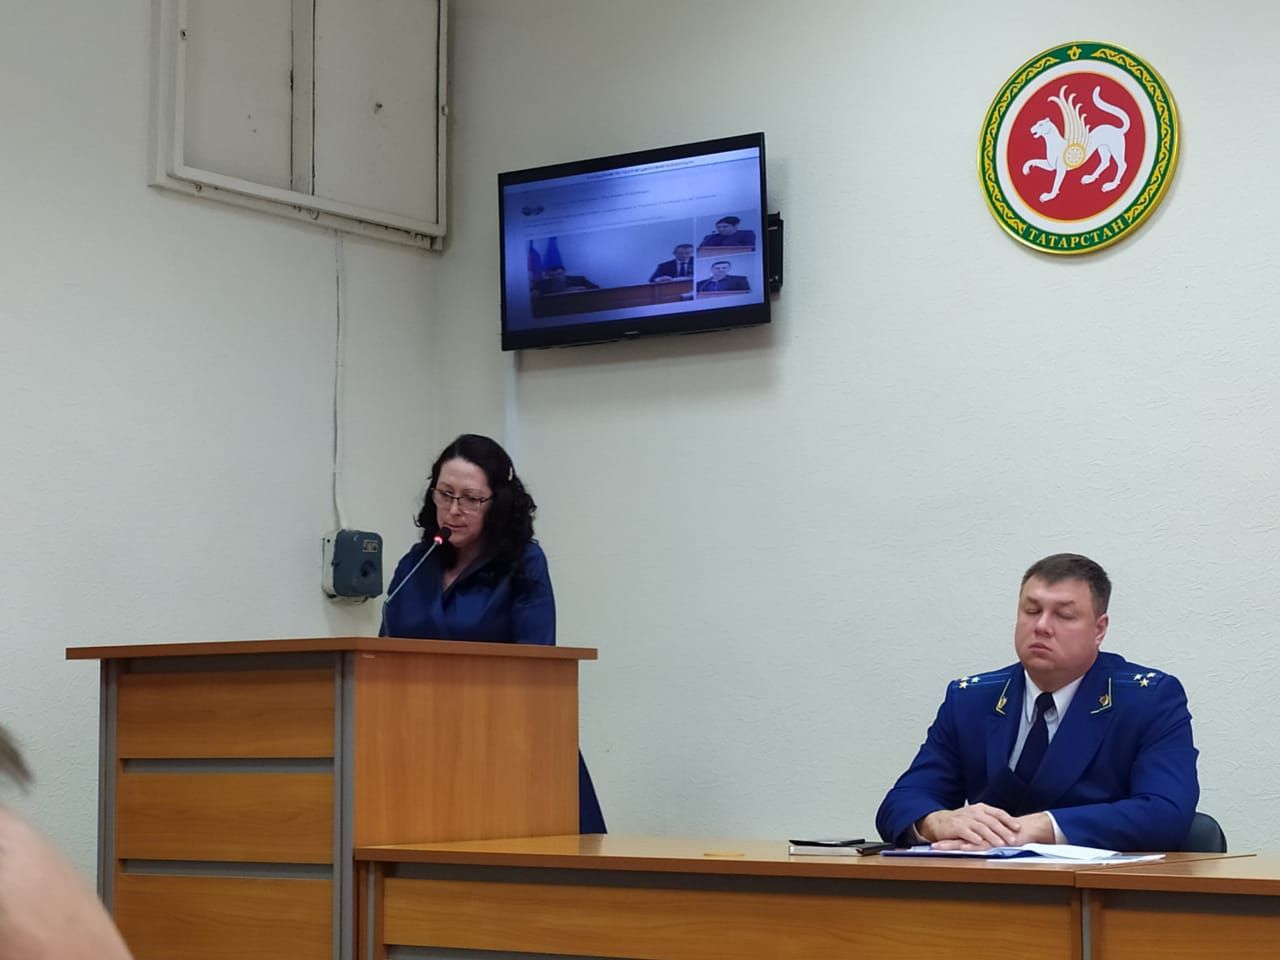 В Рыбно Слободском районе состоялось заседание районной комиссии по координации работы по противодействию коррупции